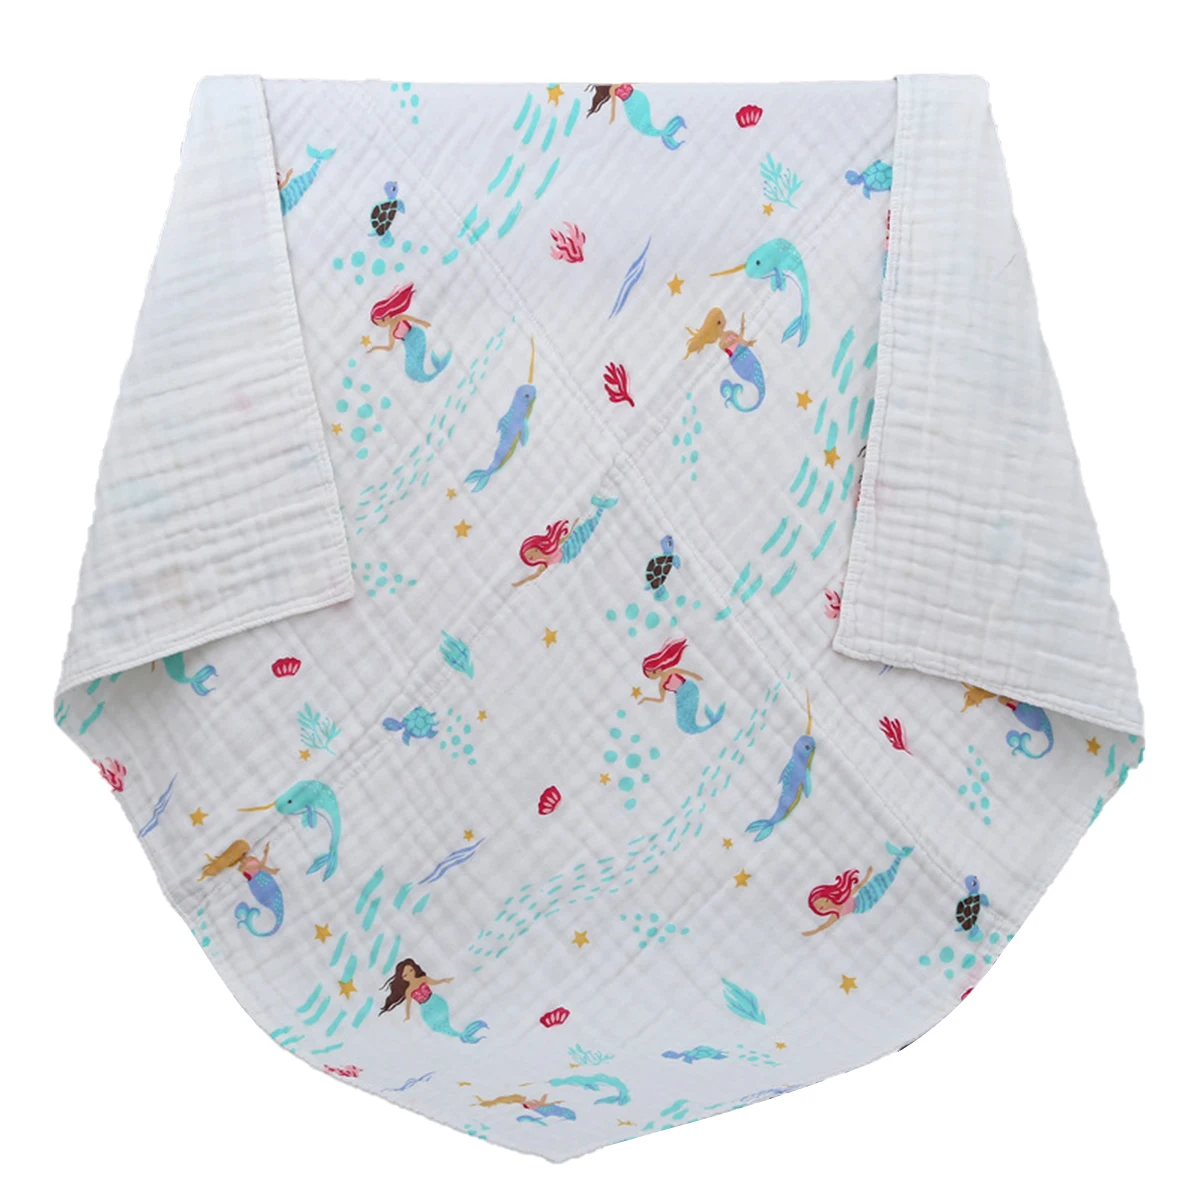 

Детское мягкое дышащее банное полотенце, 6 слоев марлевого одеяла с принтом русалки, для новорожденных мальчиков и девочек, 110 х110 см